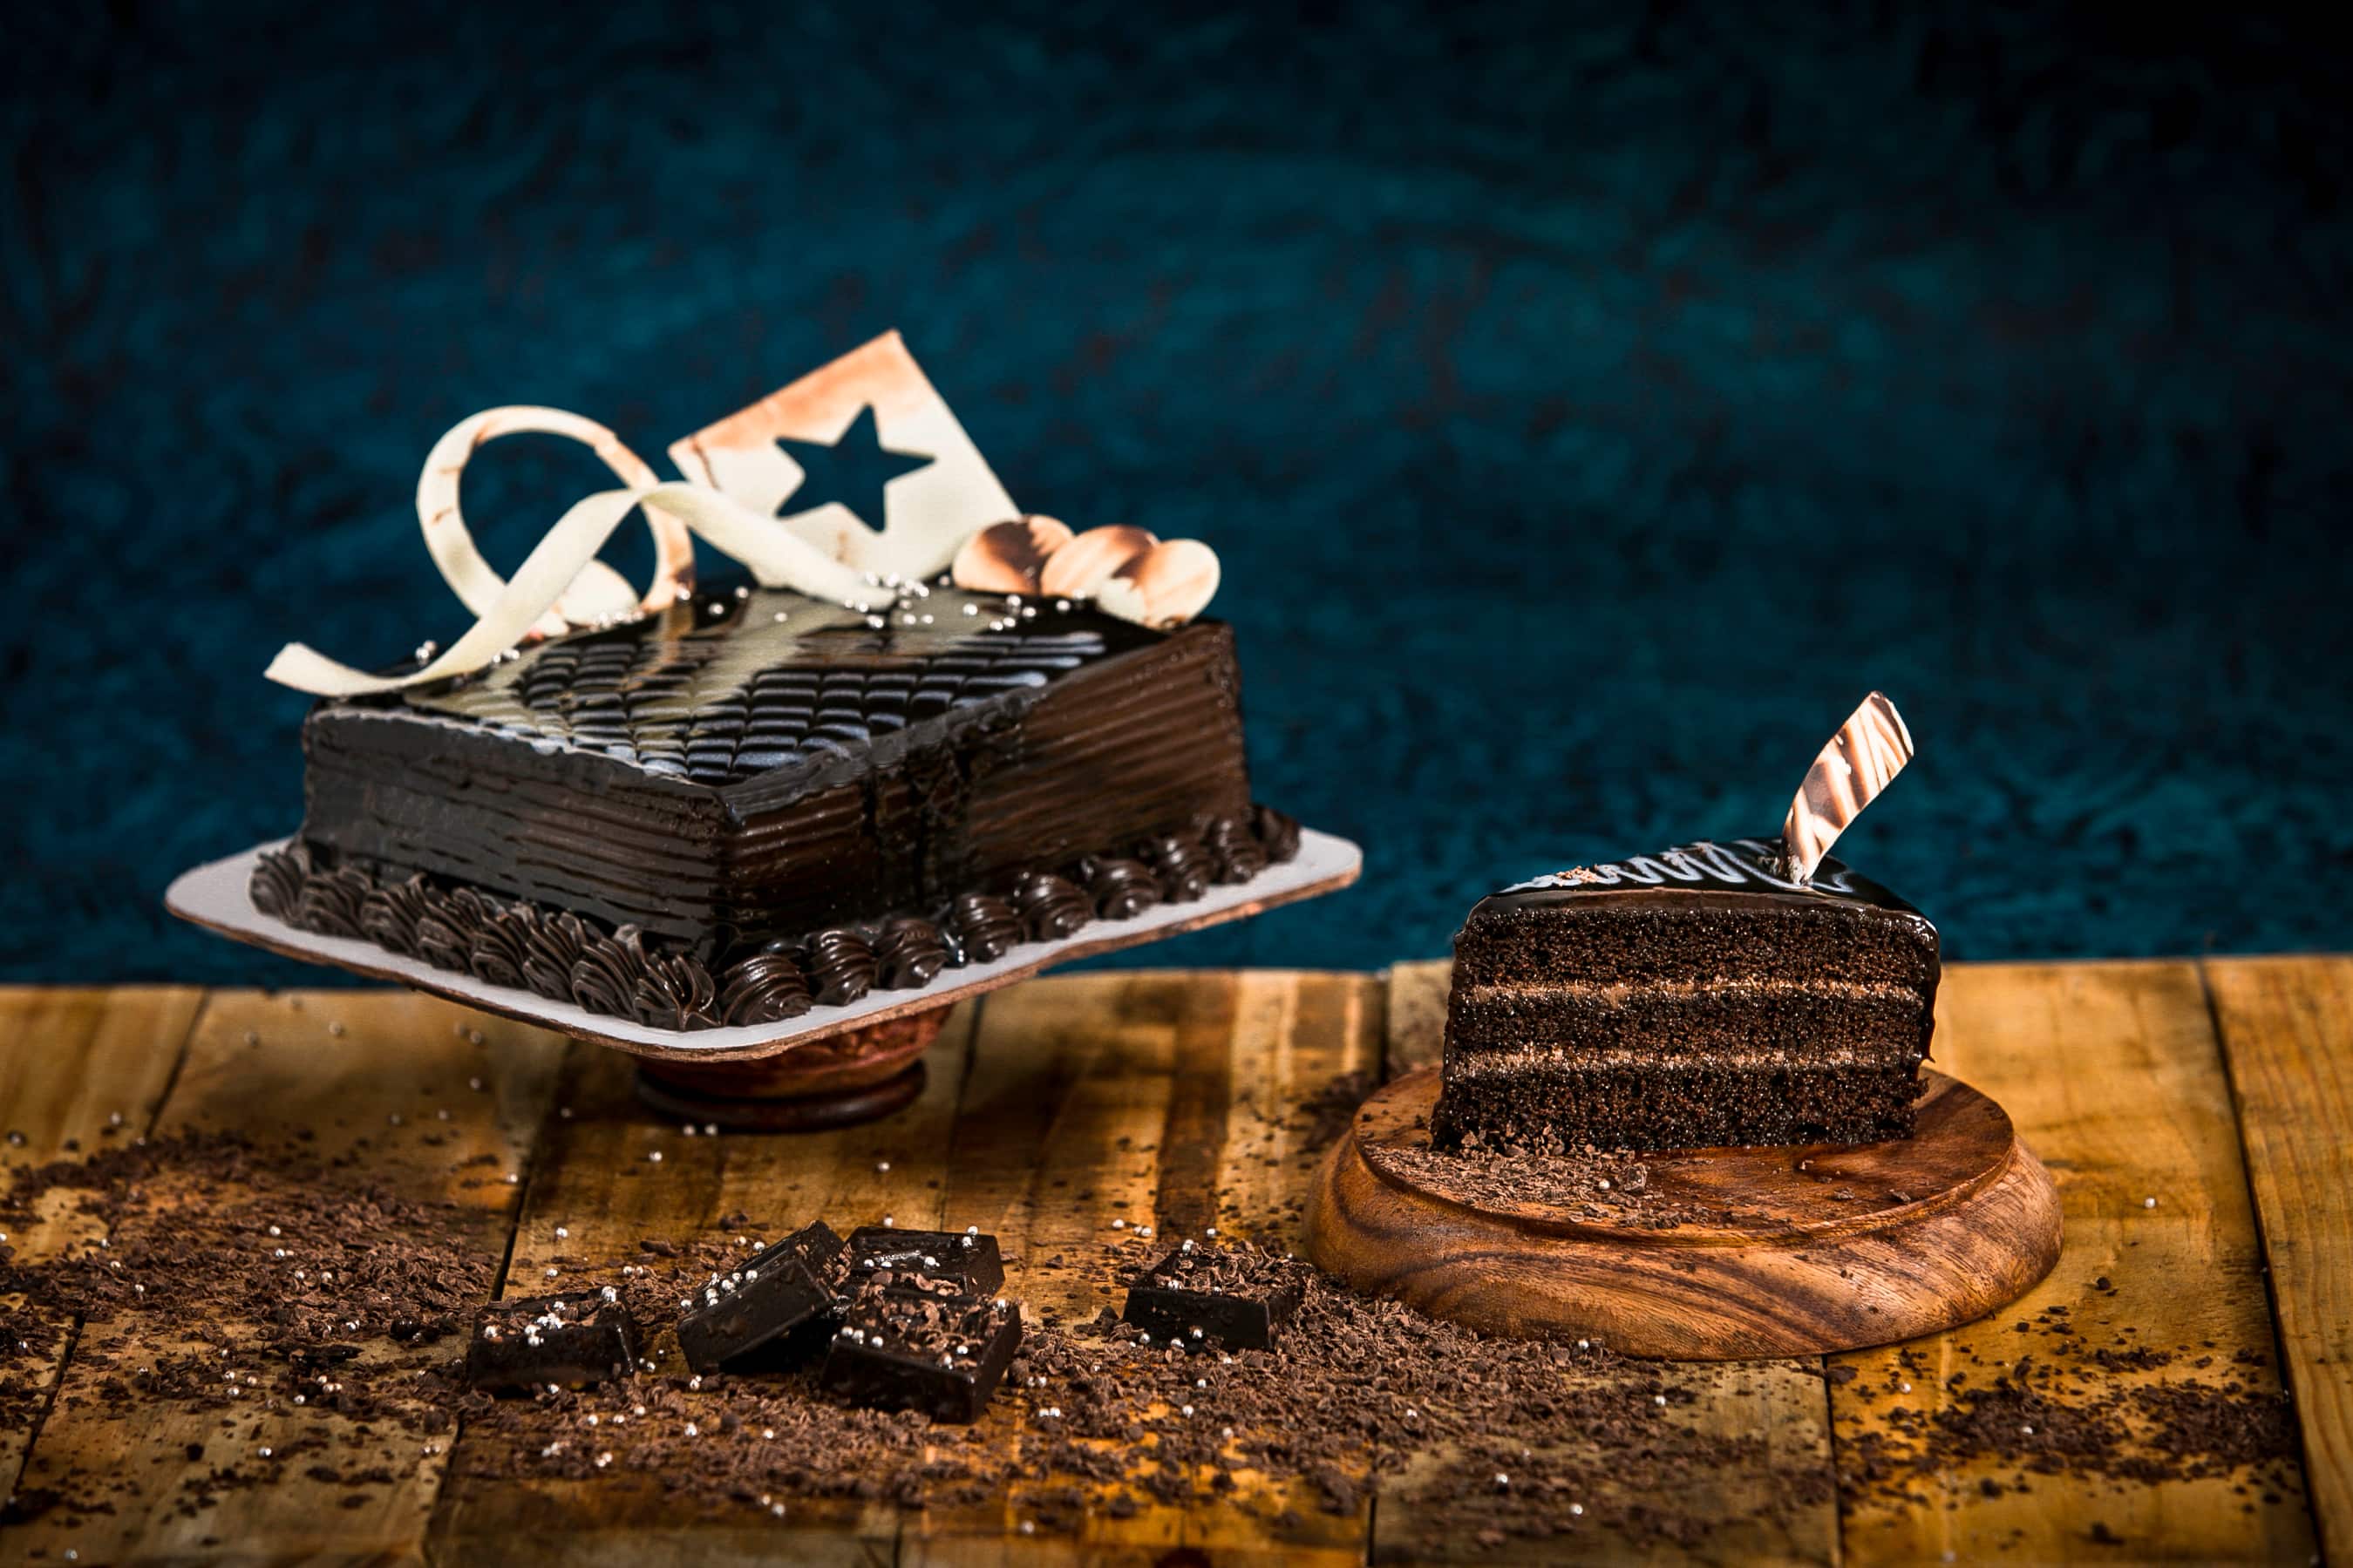 Share 58+ amma's pastries cake designs - in.daotaonec